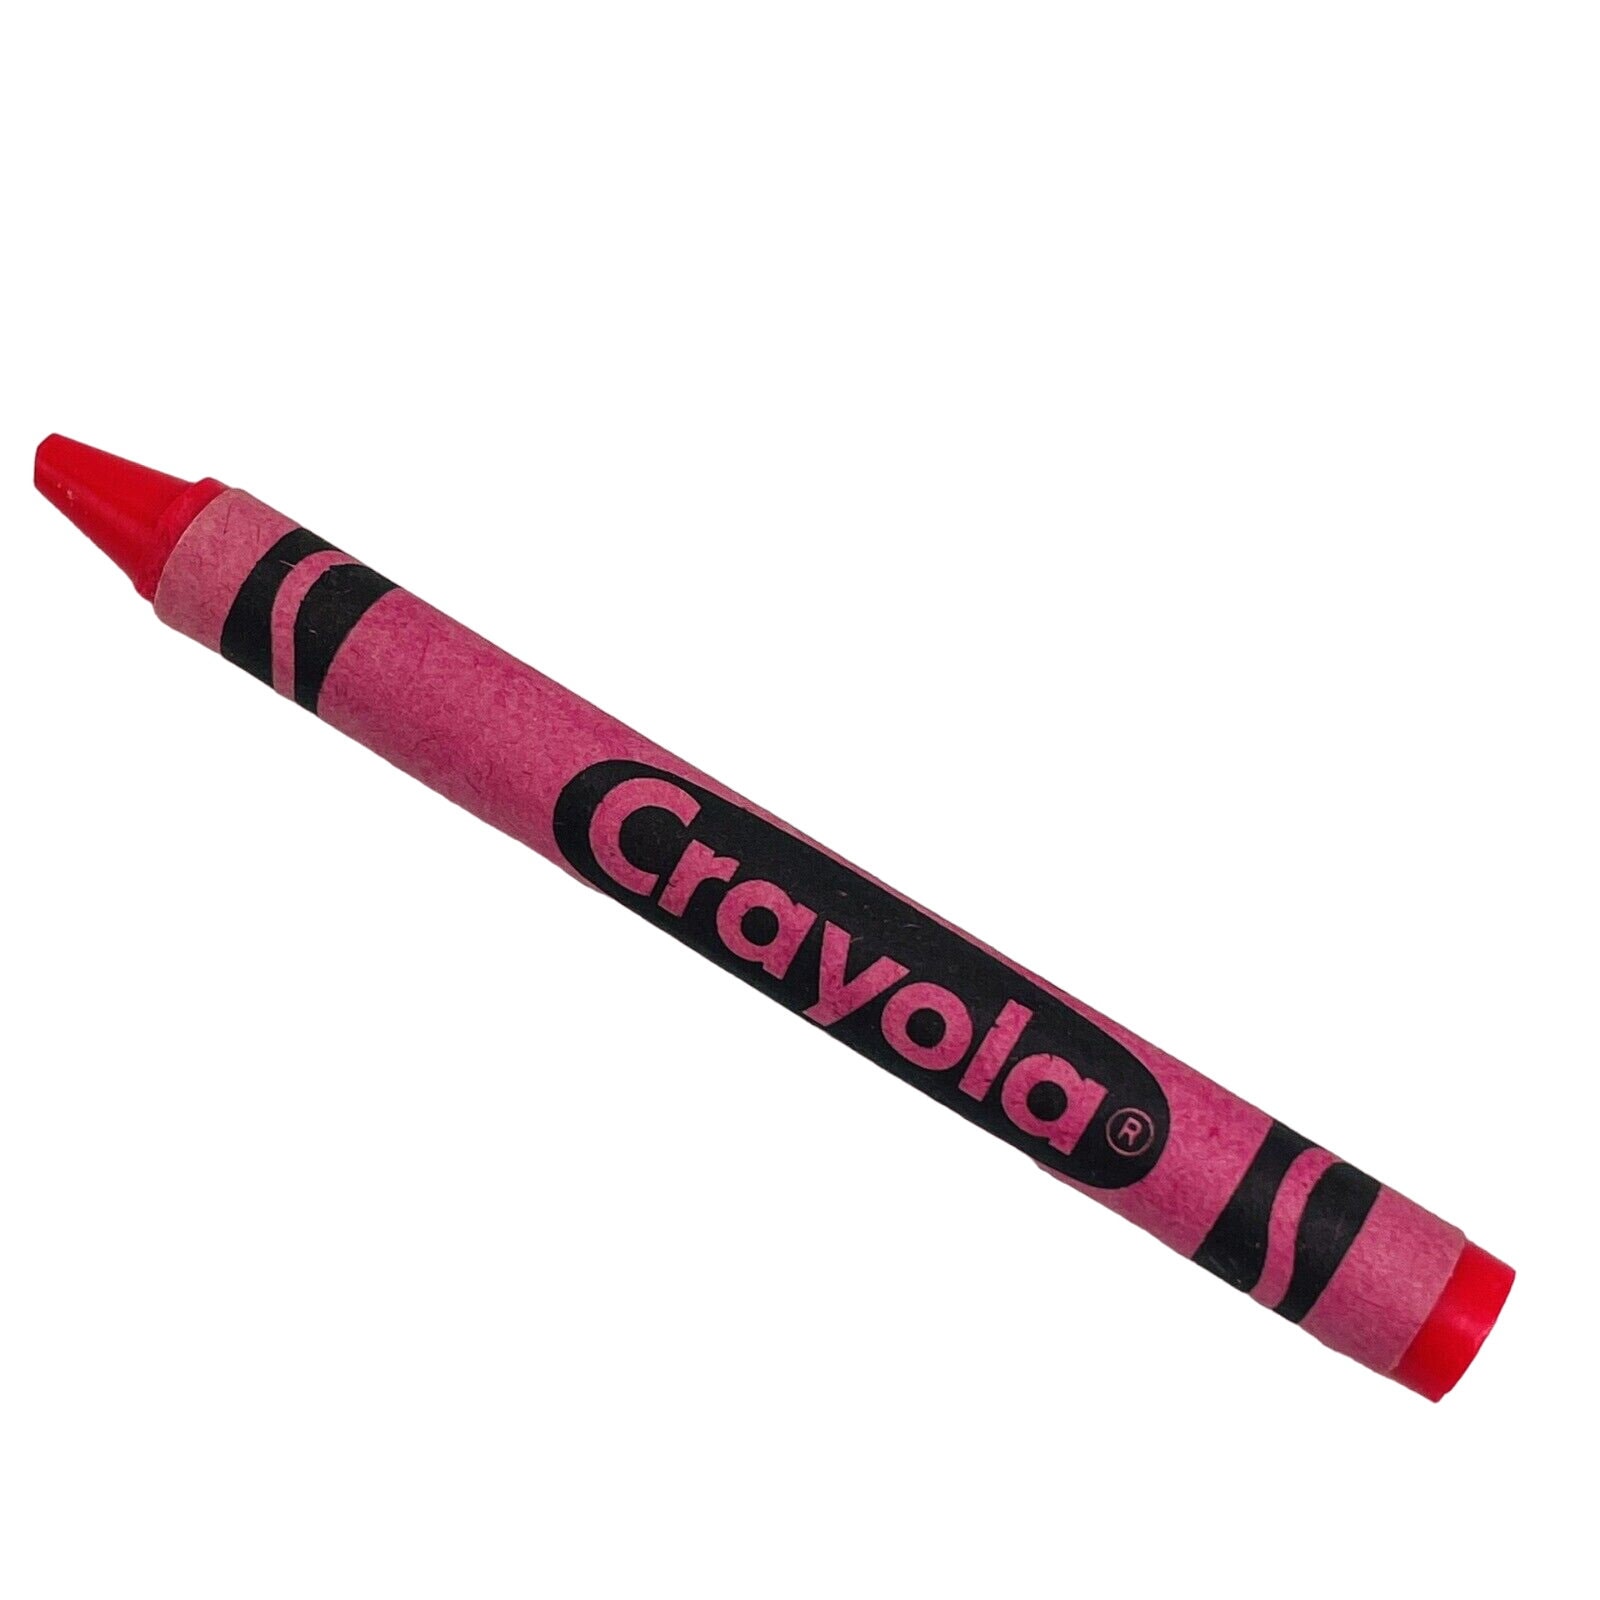 Crayola Crayon Shocking Pink